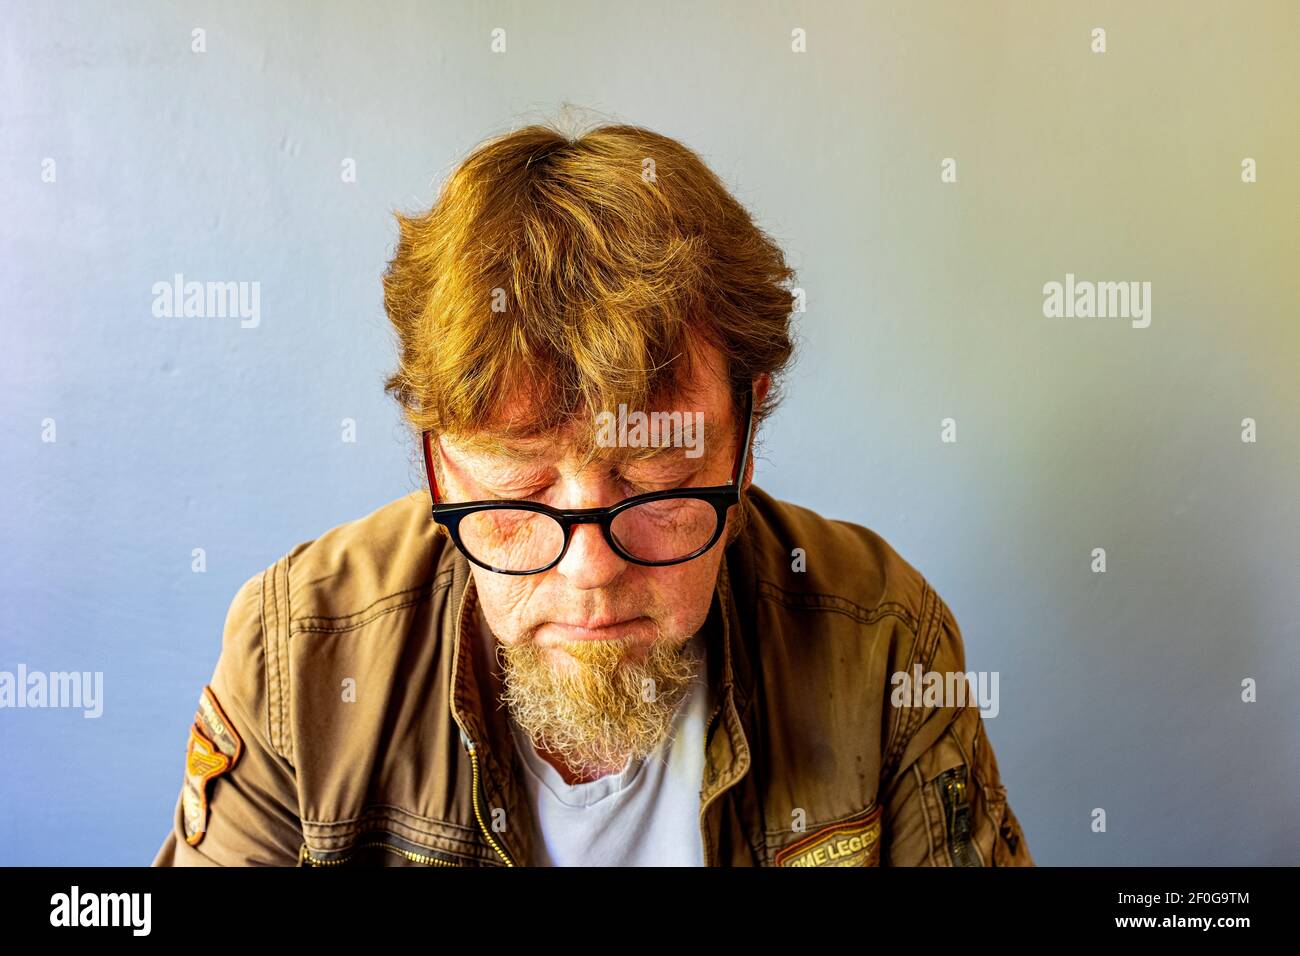 Tilburg, Niederlande. Portrait von Guido Koppes, einem reifen erwachsenen Mann mit einem Corona Style Hairdue, trägt eine Brille. Studio Porträt. Stockfoto